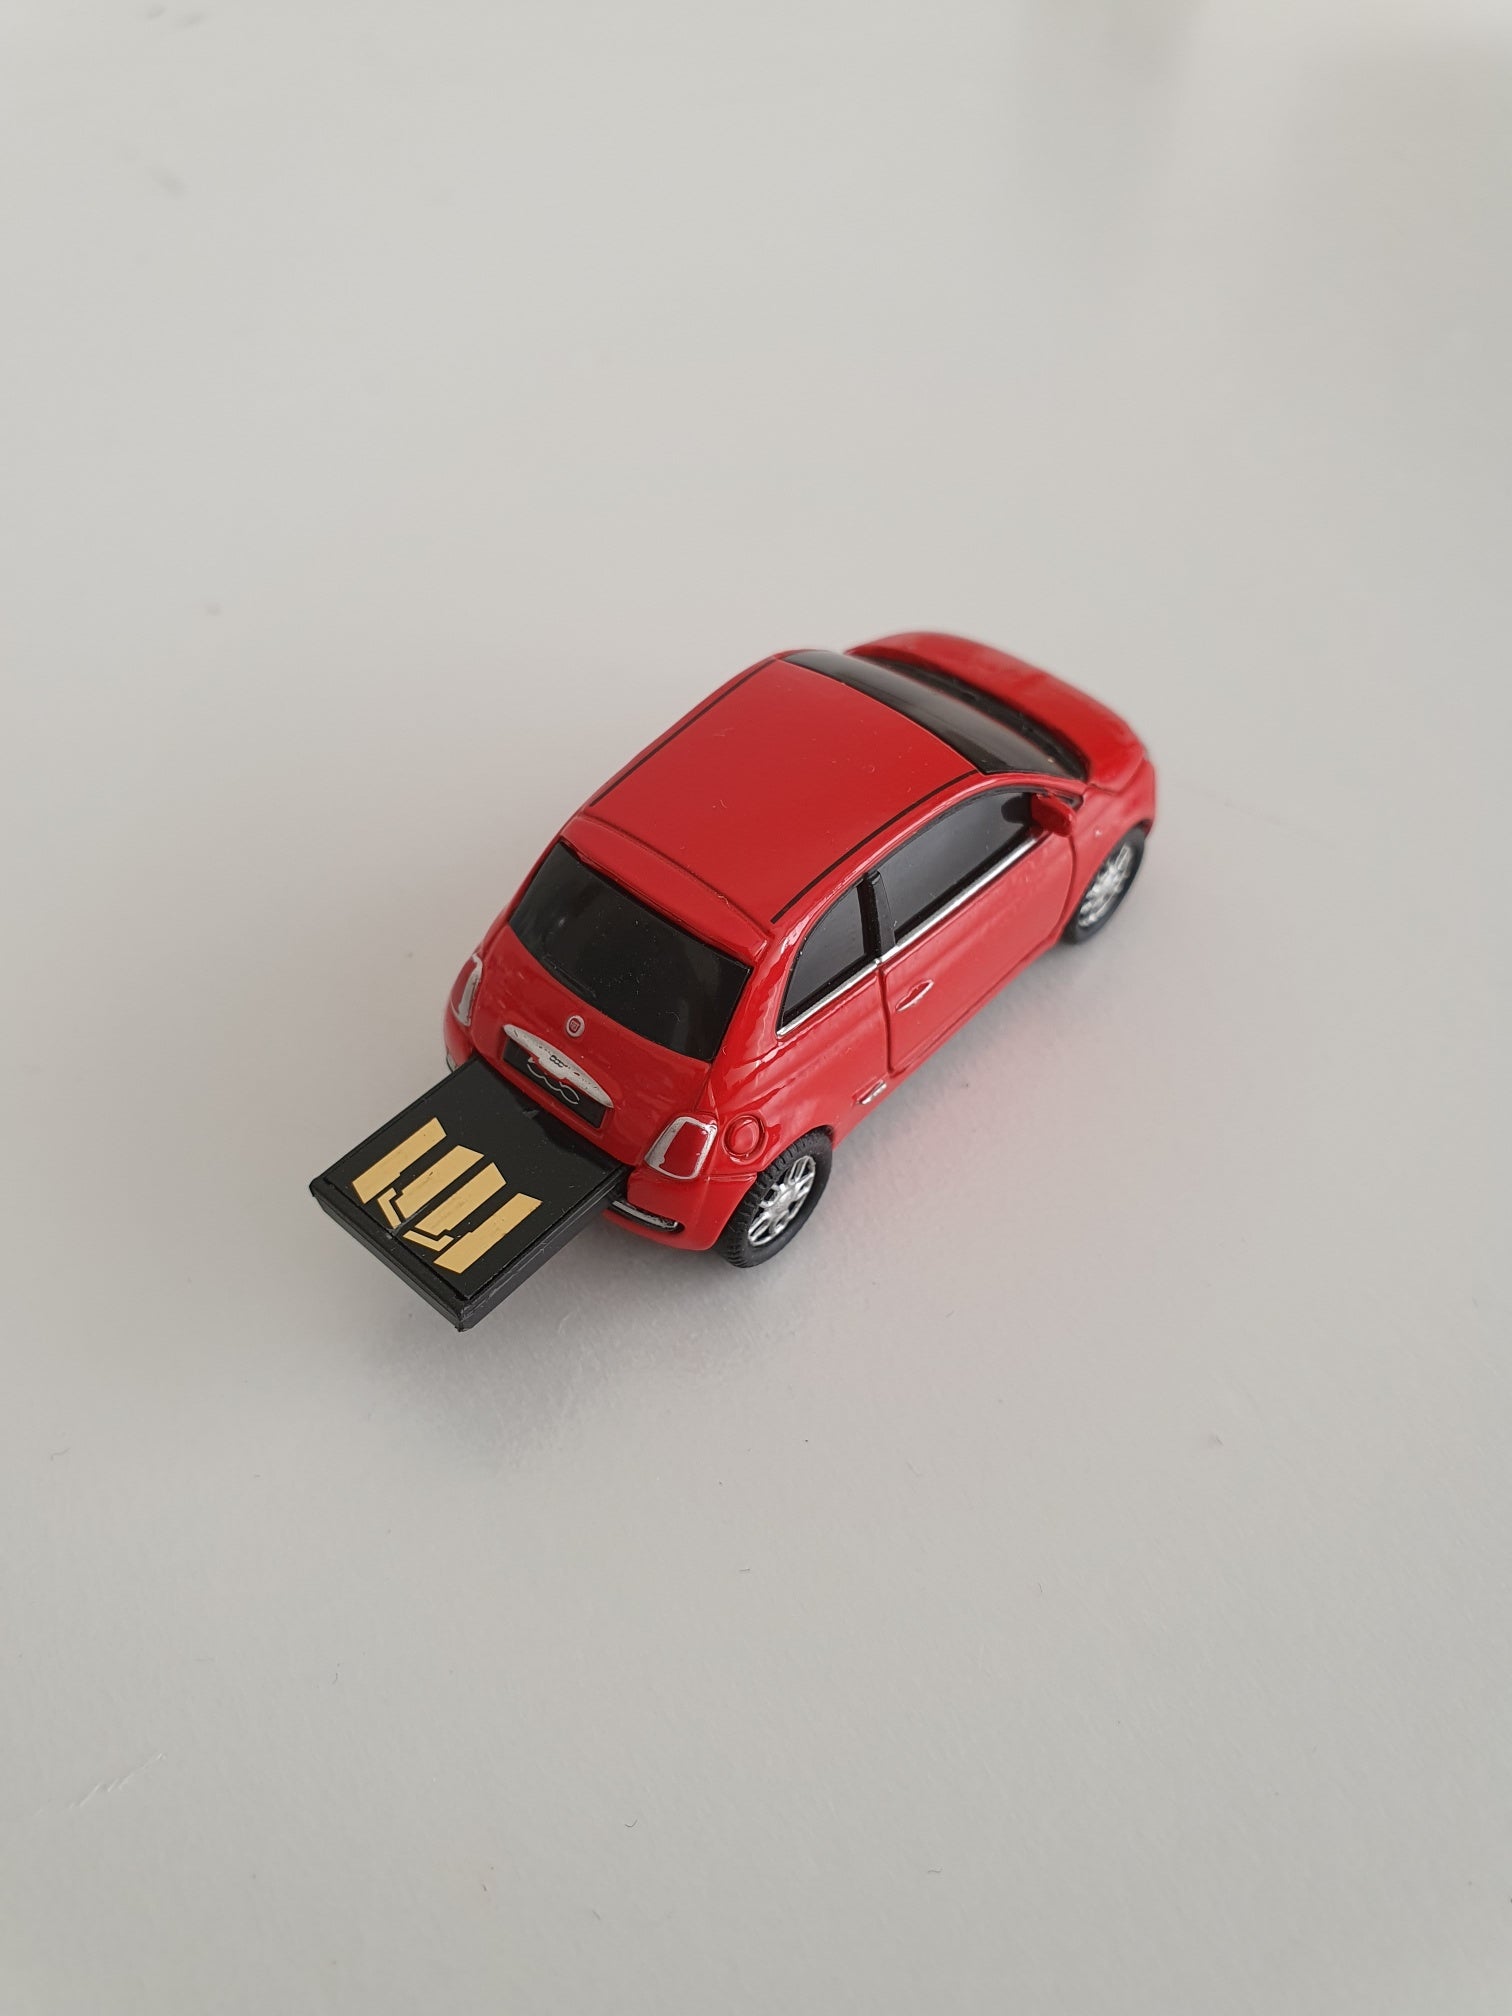 New Fiat 500 USB flash drive - red